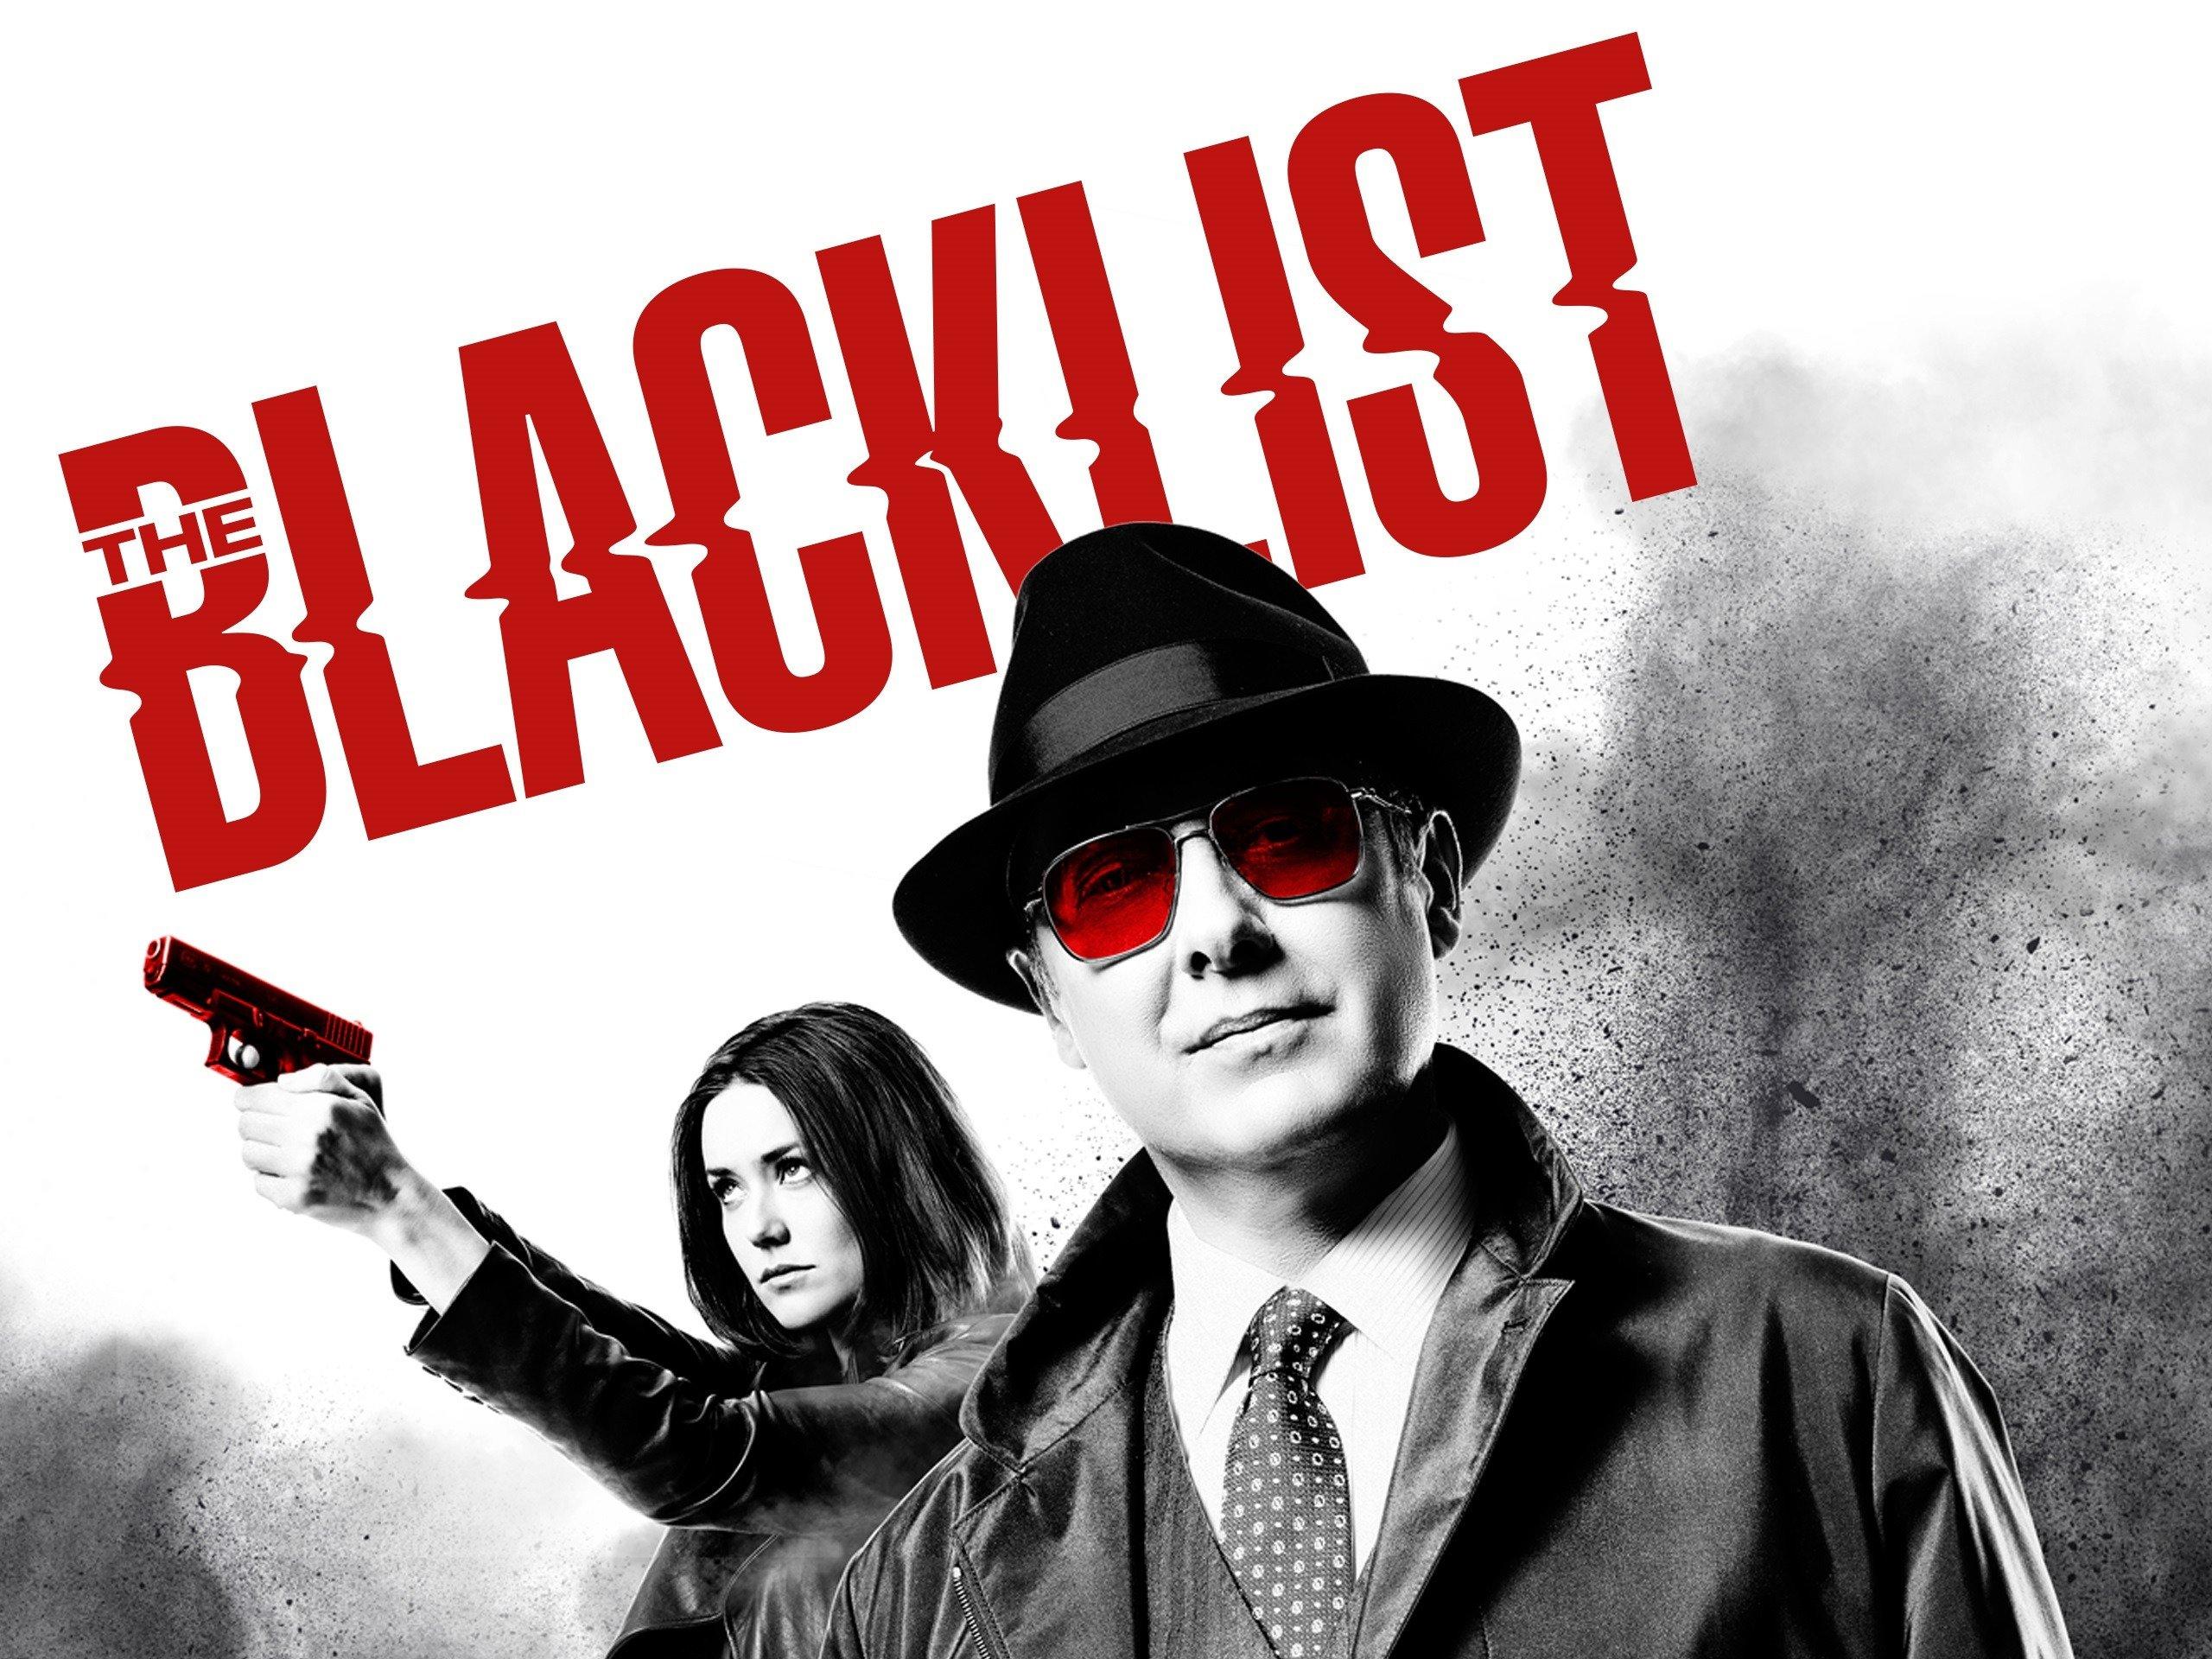 مسلسل The Blacklist الموسم 3 الحلقة 1 الأولى مترجمة